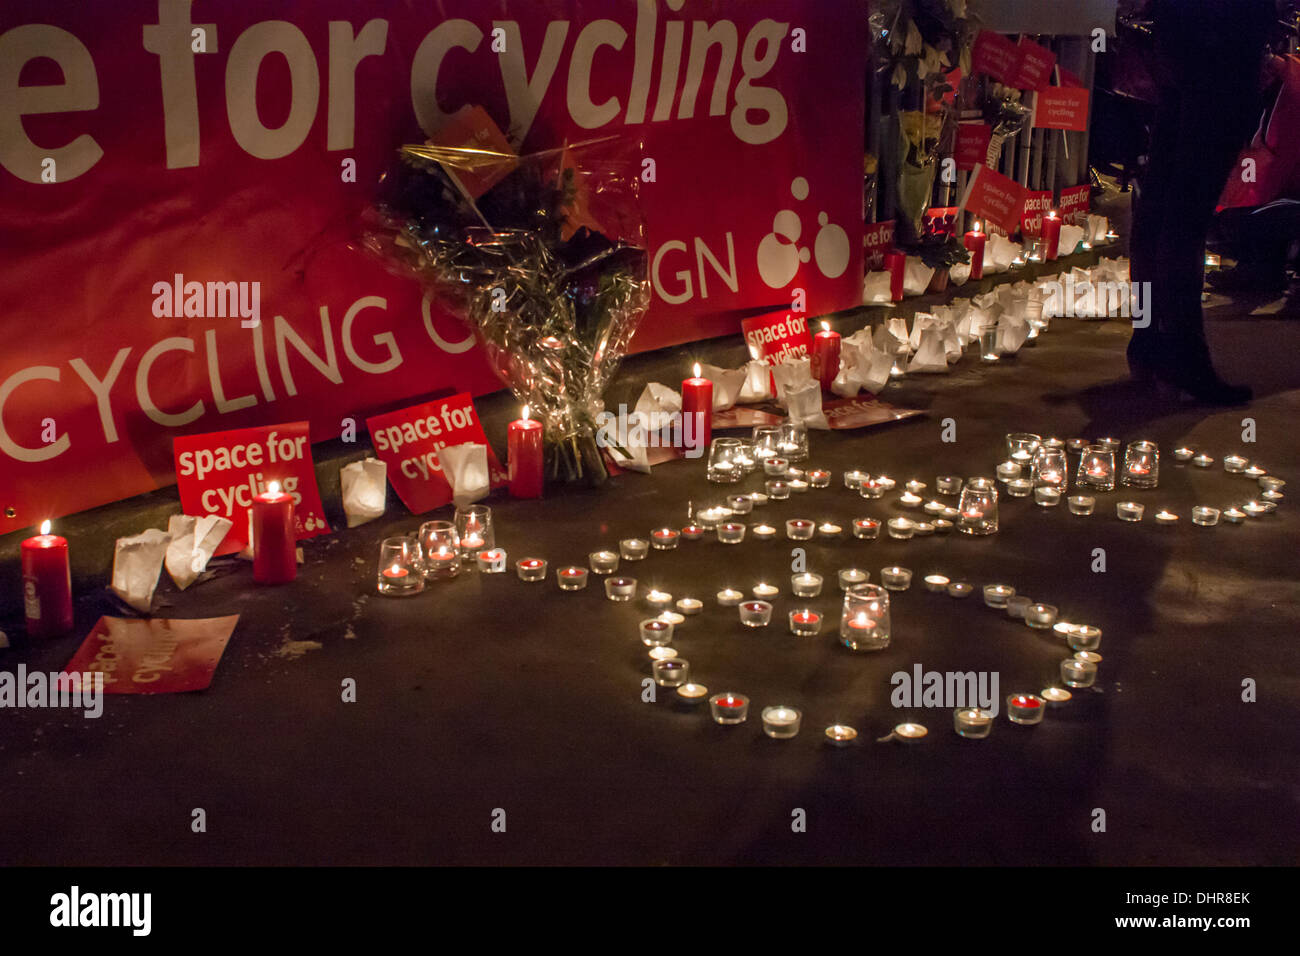 Londres, Reino Unido. 13 de noviembre de 2013. 1000 ciclistas se reúnen en la rotonda de proa, Londres, para protestar 4 muertes en 8 días de Crédito: © Zefrog/Alamy Live News Foto de stock